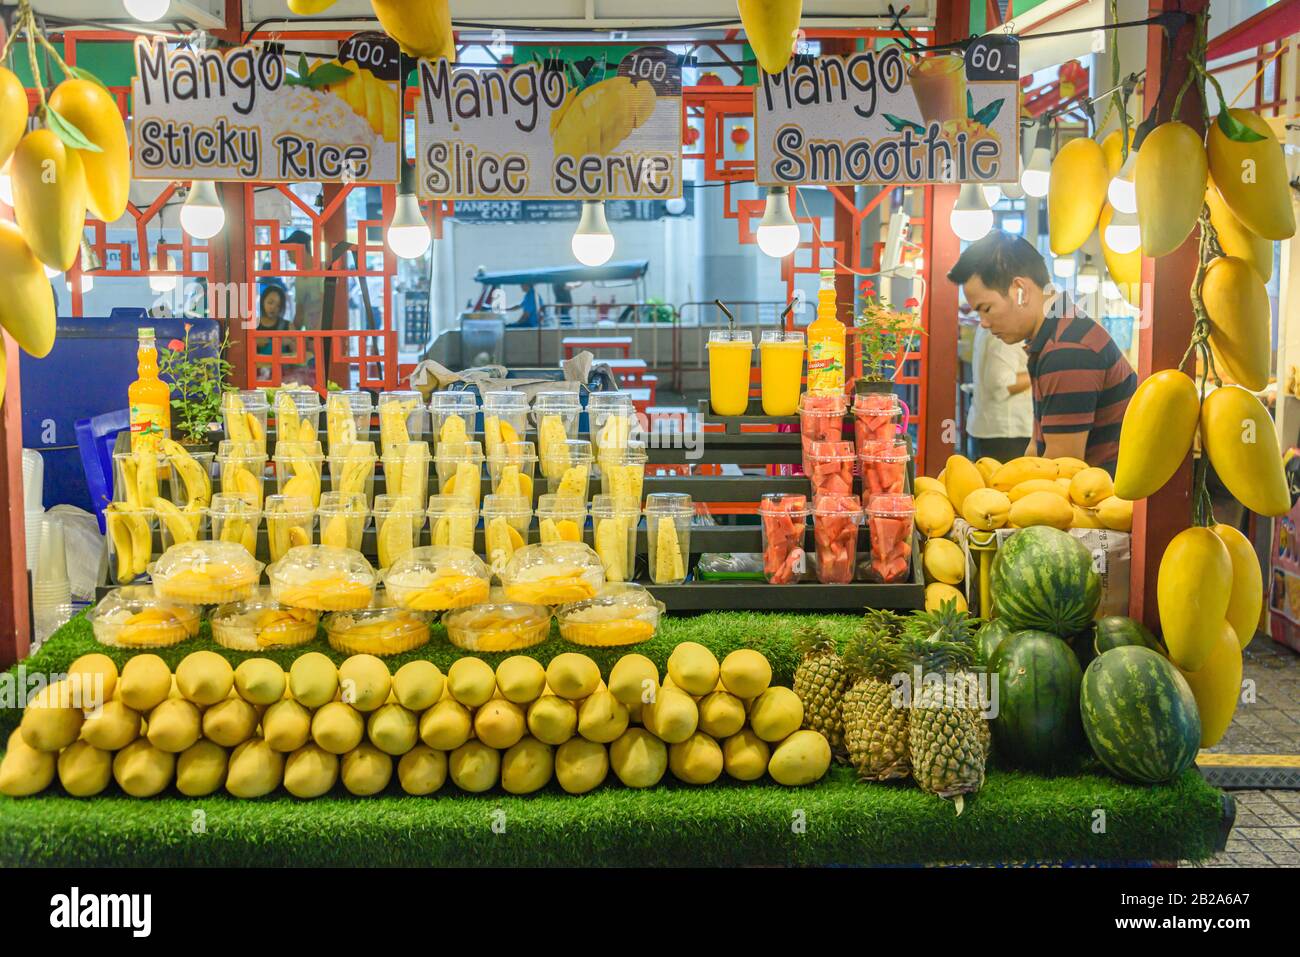 Mango a fette, pinapple e melone in vendita presso una stalla alimentare di strada, Bangkok, Thailandia Foto Stock